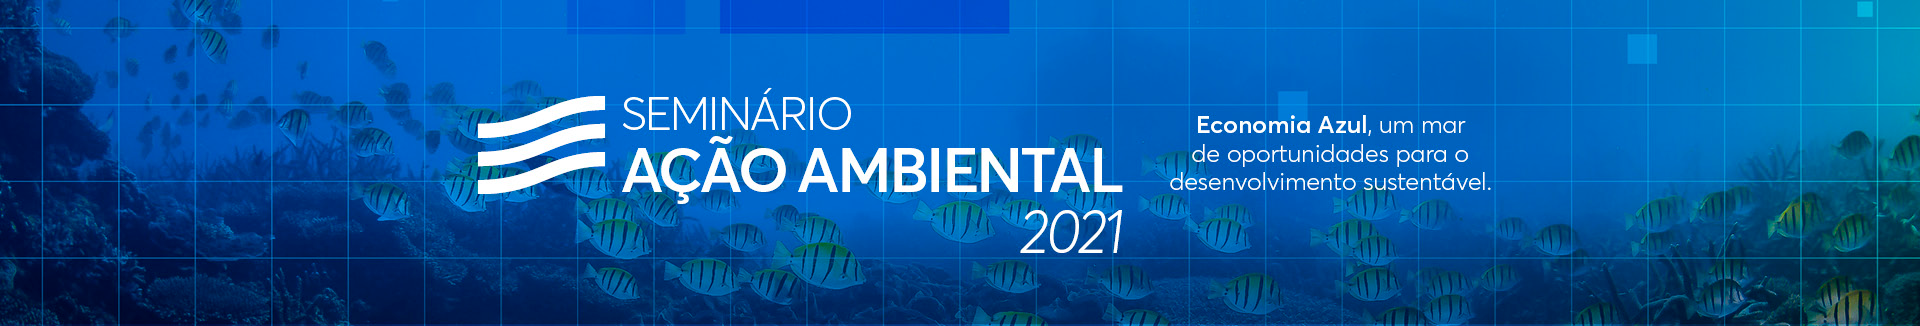 Seminário Ação Ambiental 2021